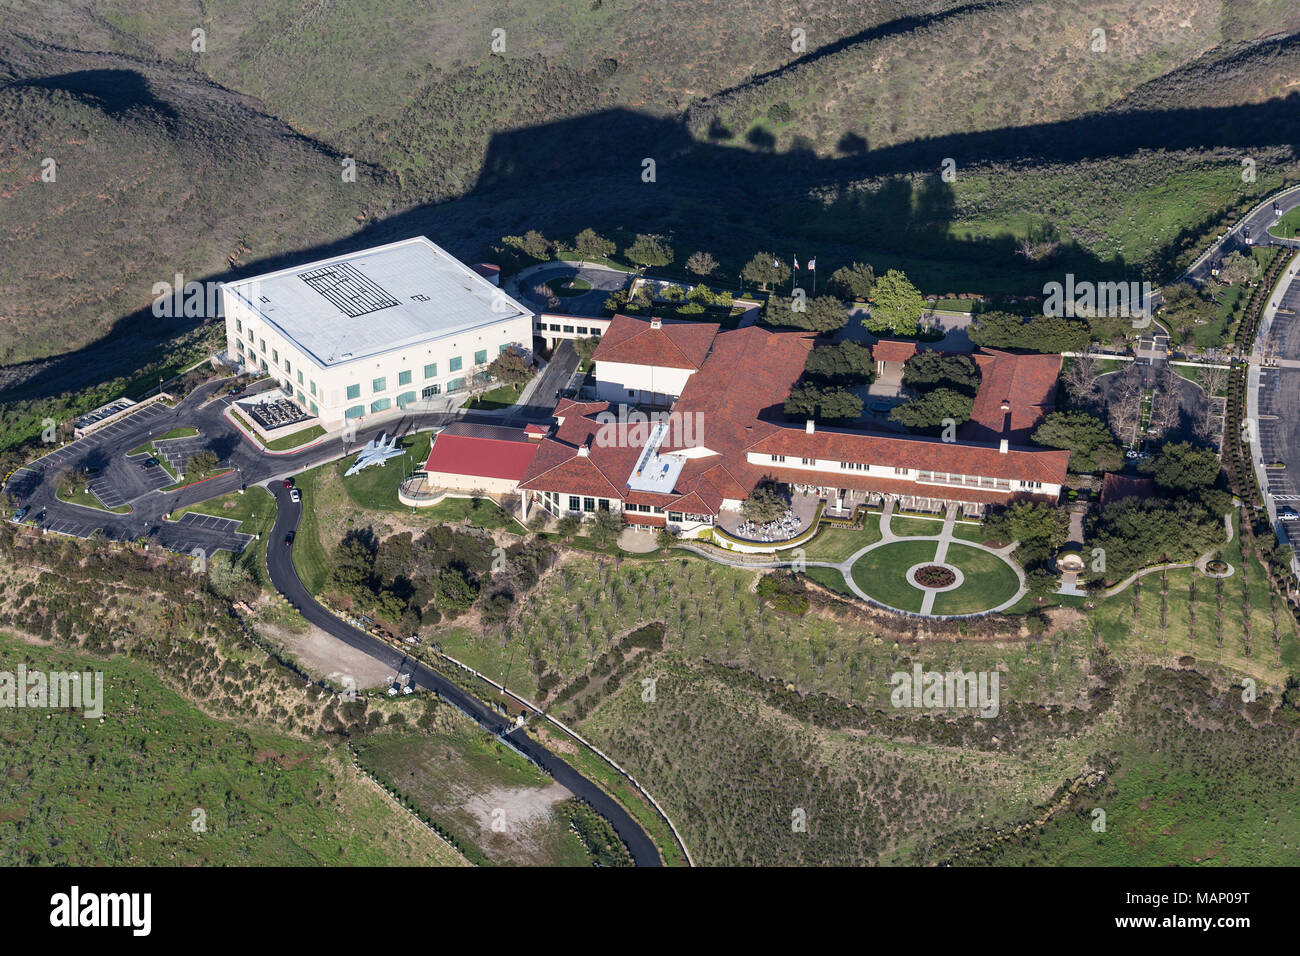 Simi Valley, Californie, USA - Le 26 mars 2018 : Vue aérienne de la Bibliothèque présidentielle Ronald Reagan et Centre pour les affaires publiques. Banque D'Images